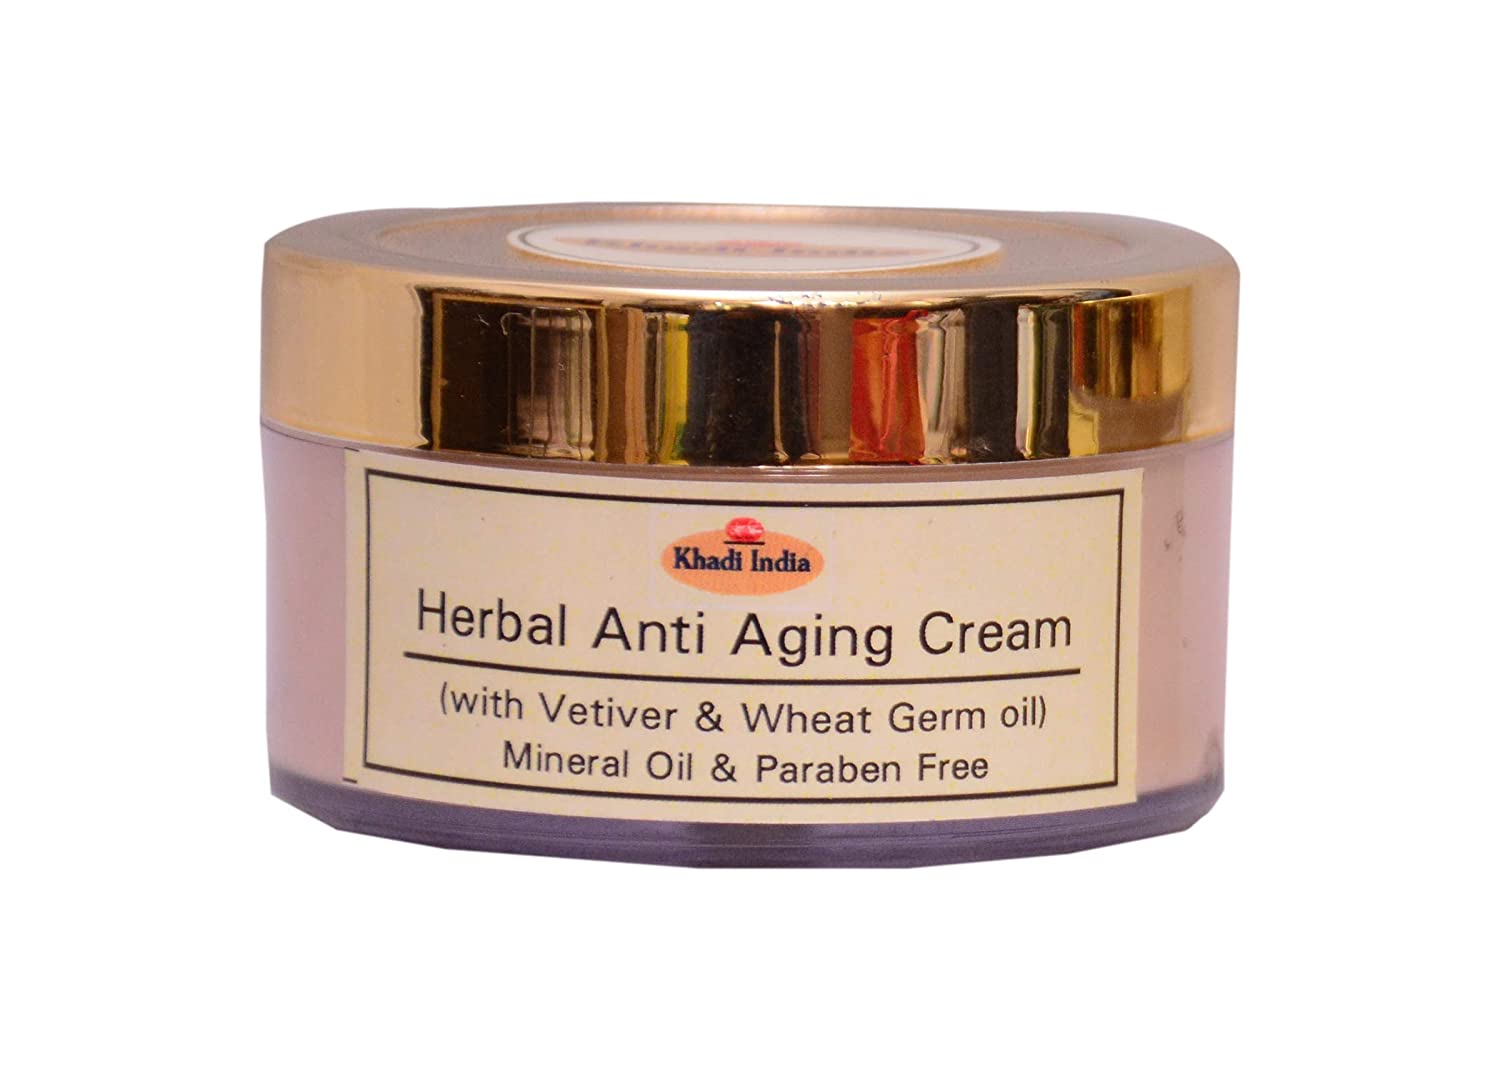 khadi india anti aging cream